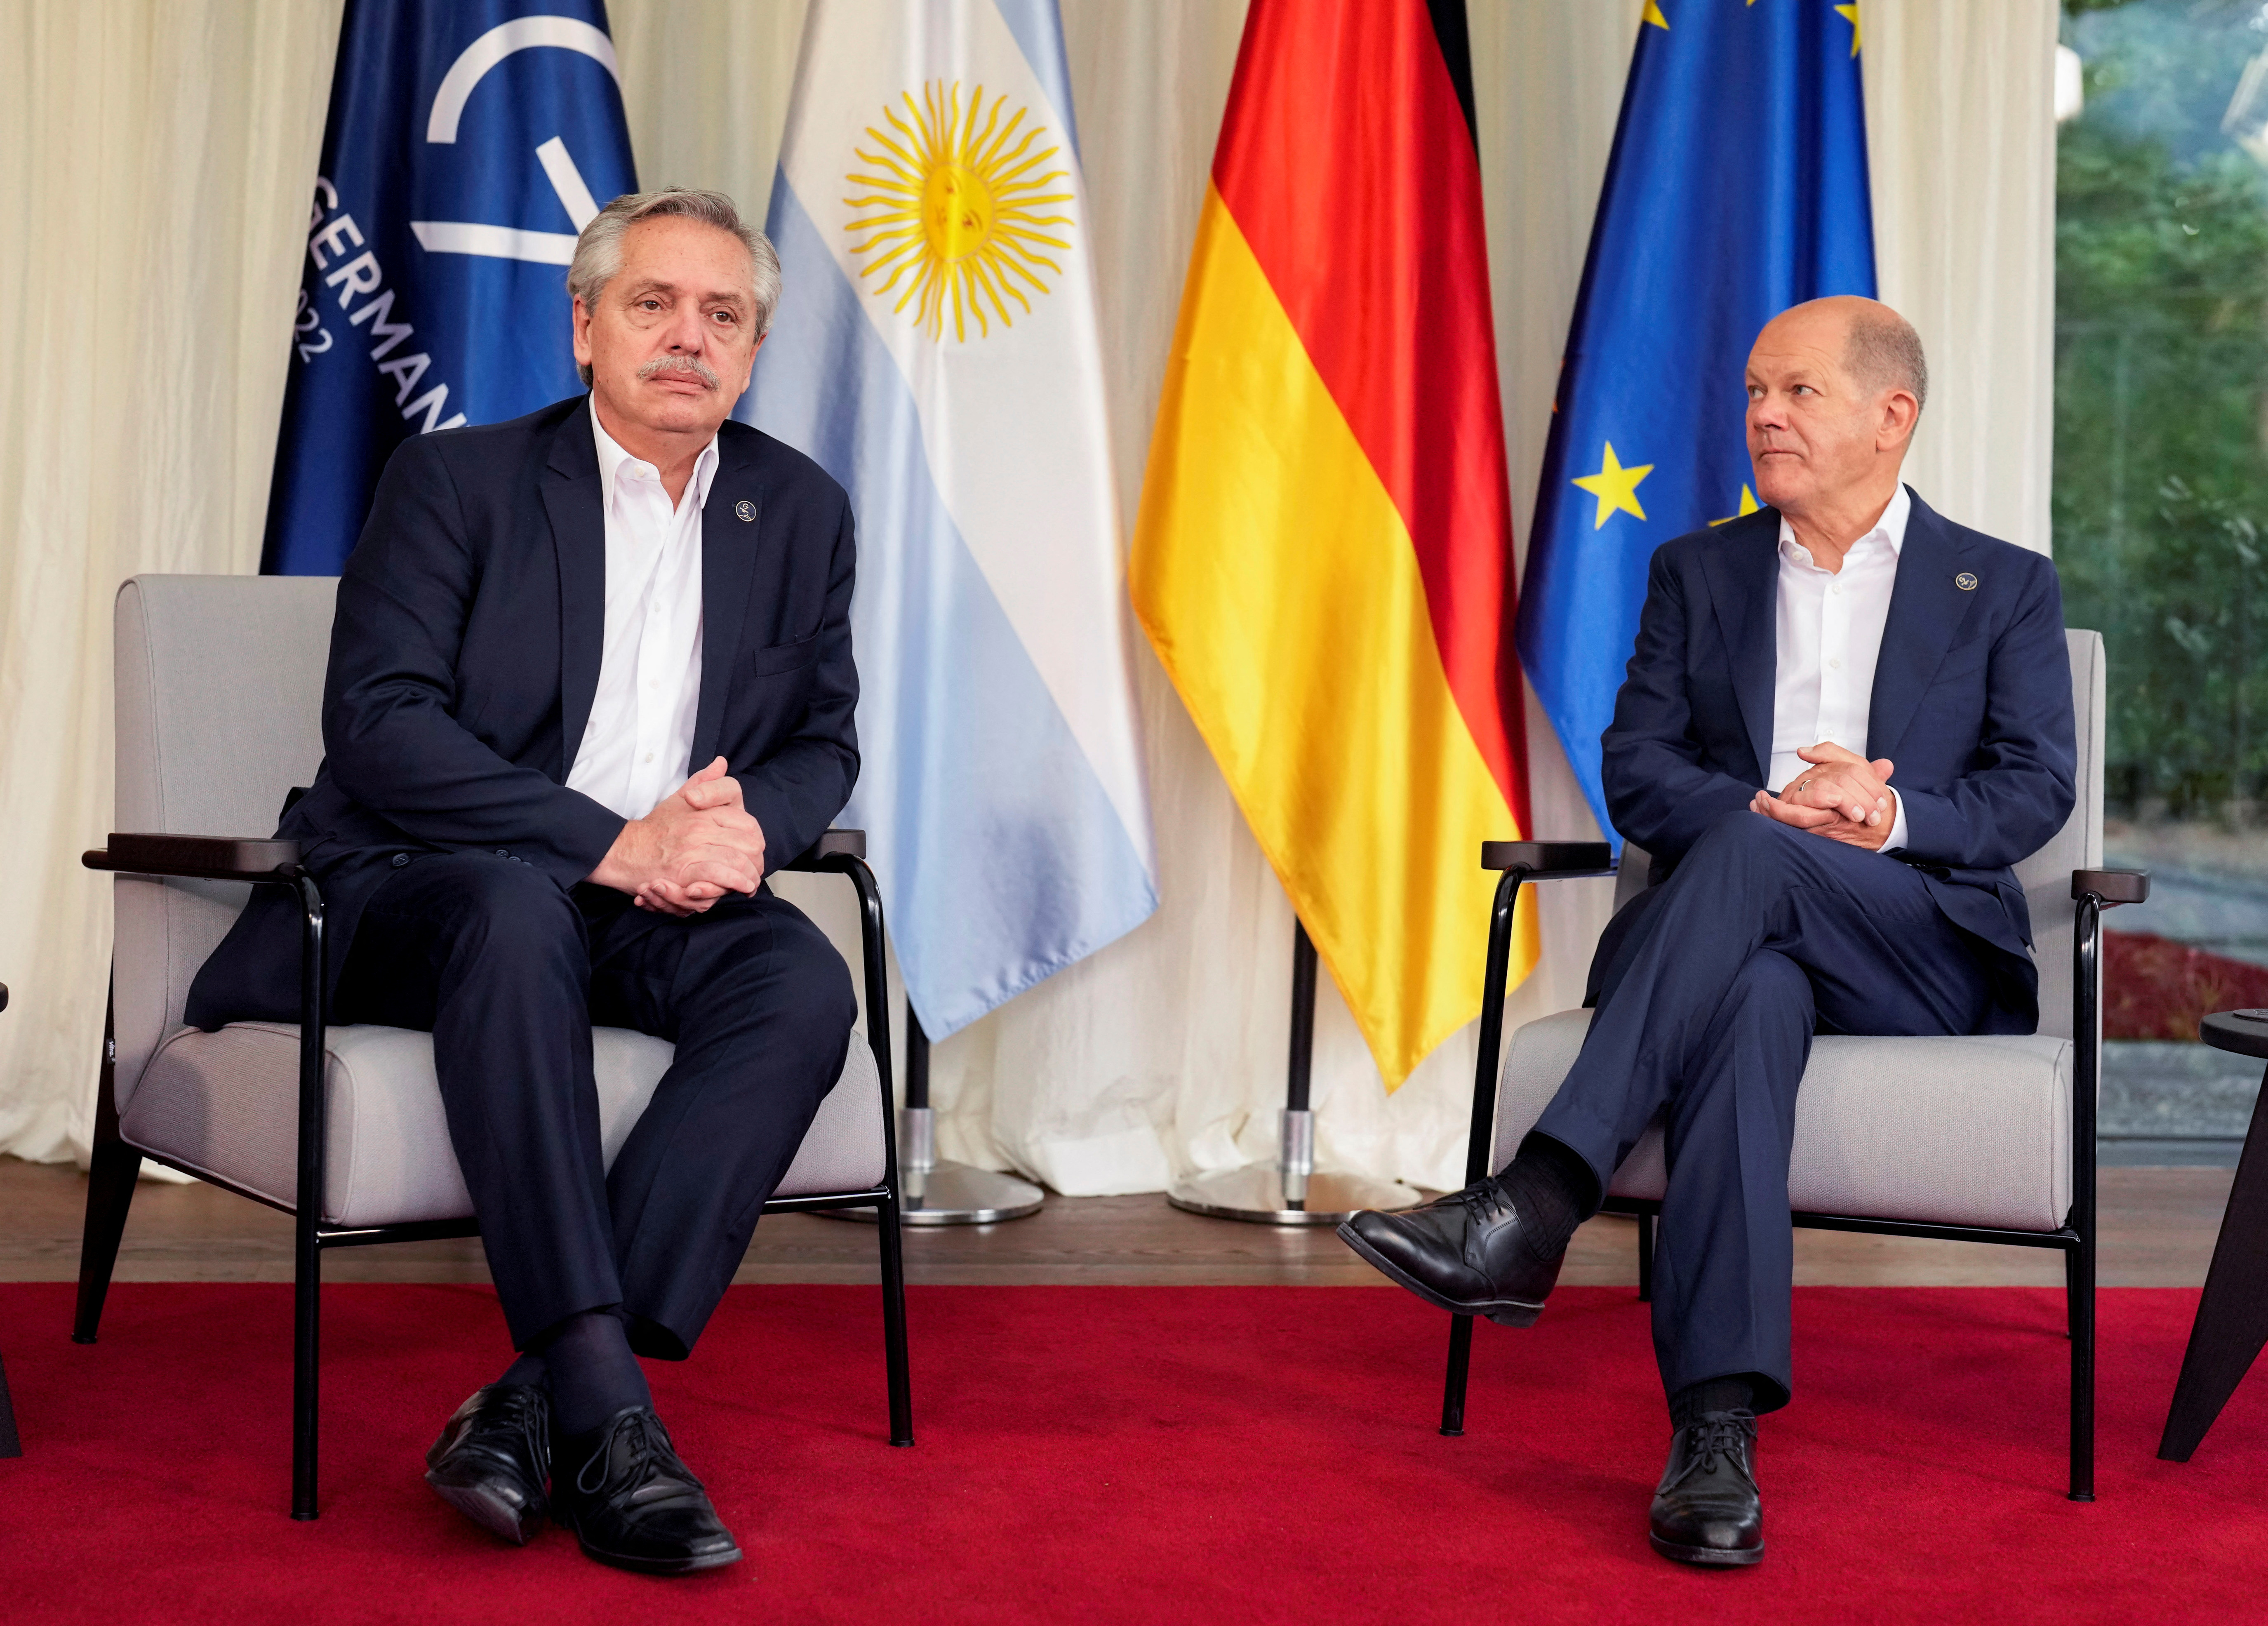 El presidente Alberto Fernández y el canciller alemán, Olaf Scholz, en la bilateral que tuvieron en junio de 2022. Será el tercer encuentro entre  ambos mandatarios
Markus Schreiber/Pool via REUTERS